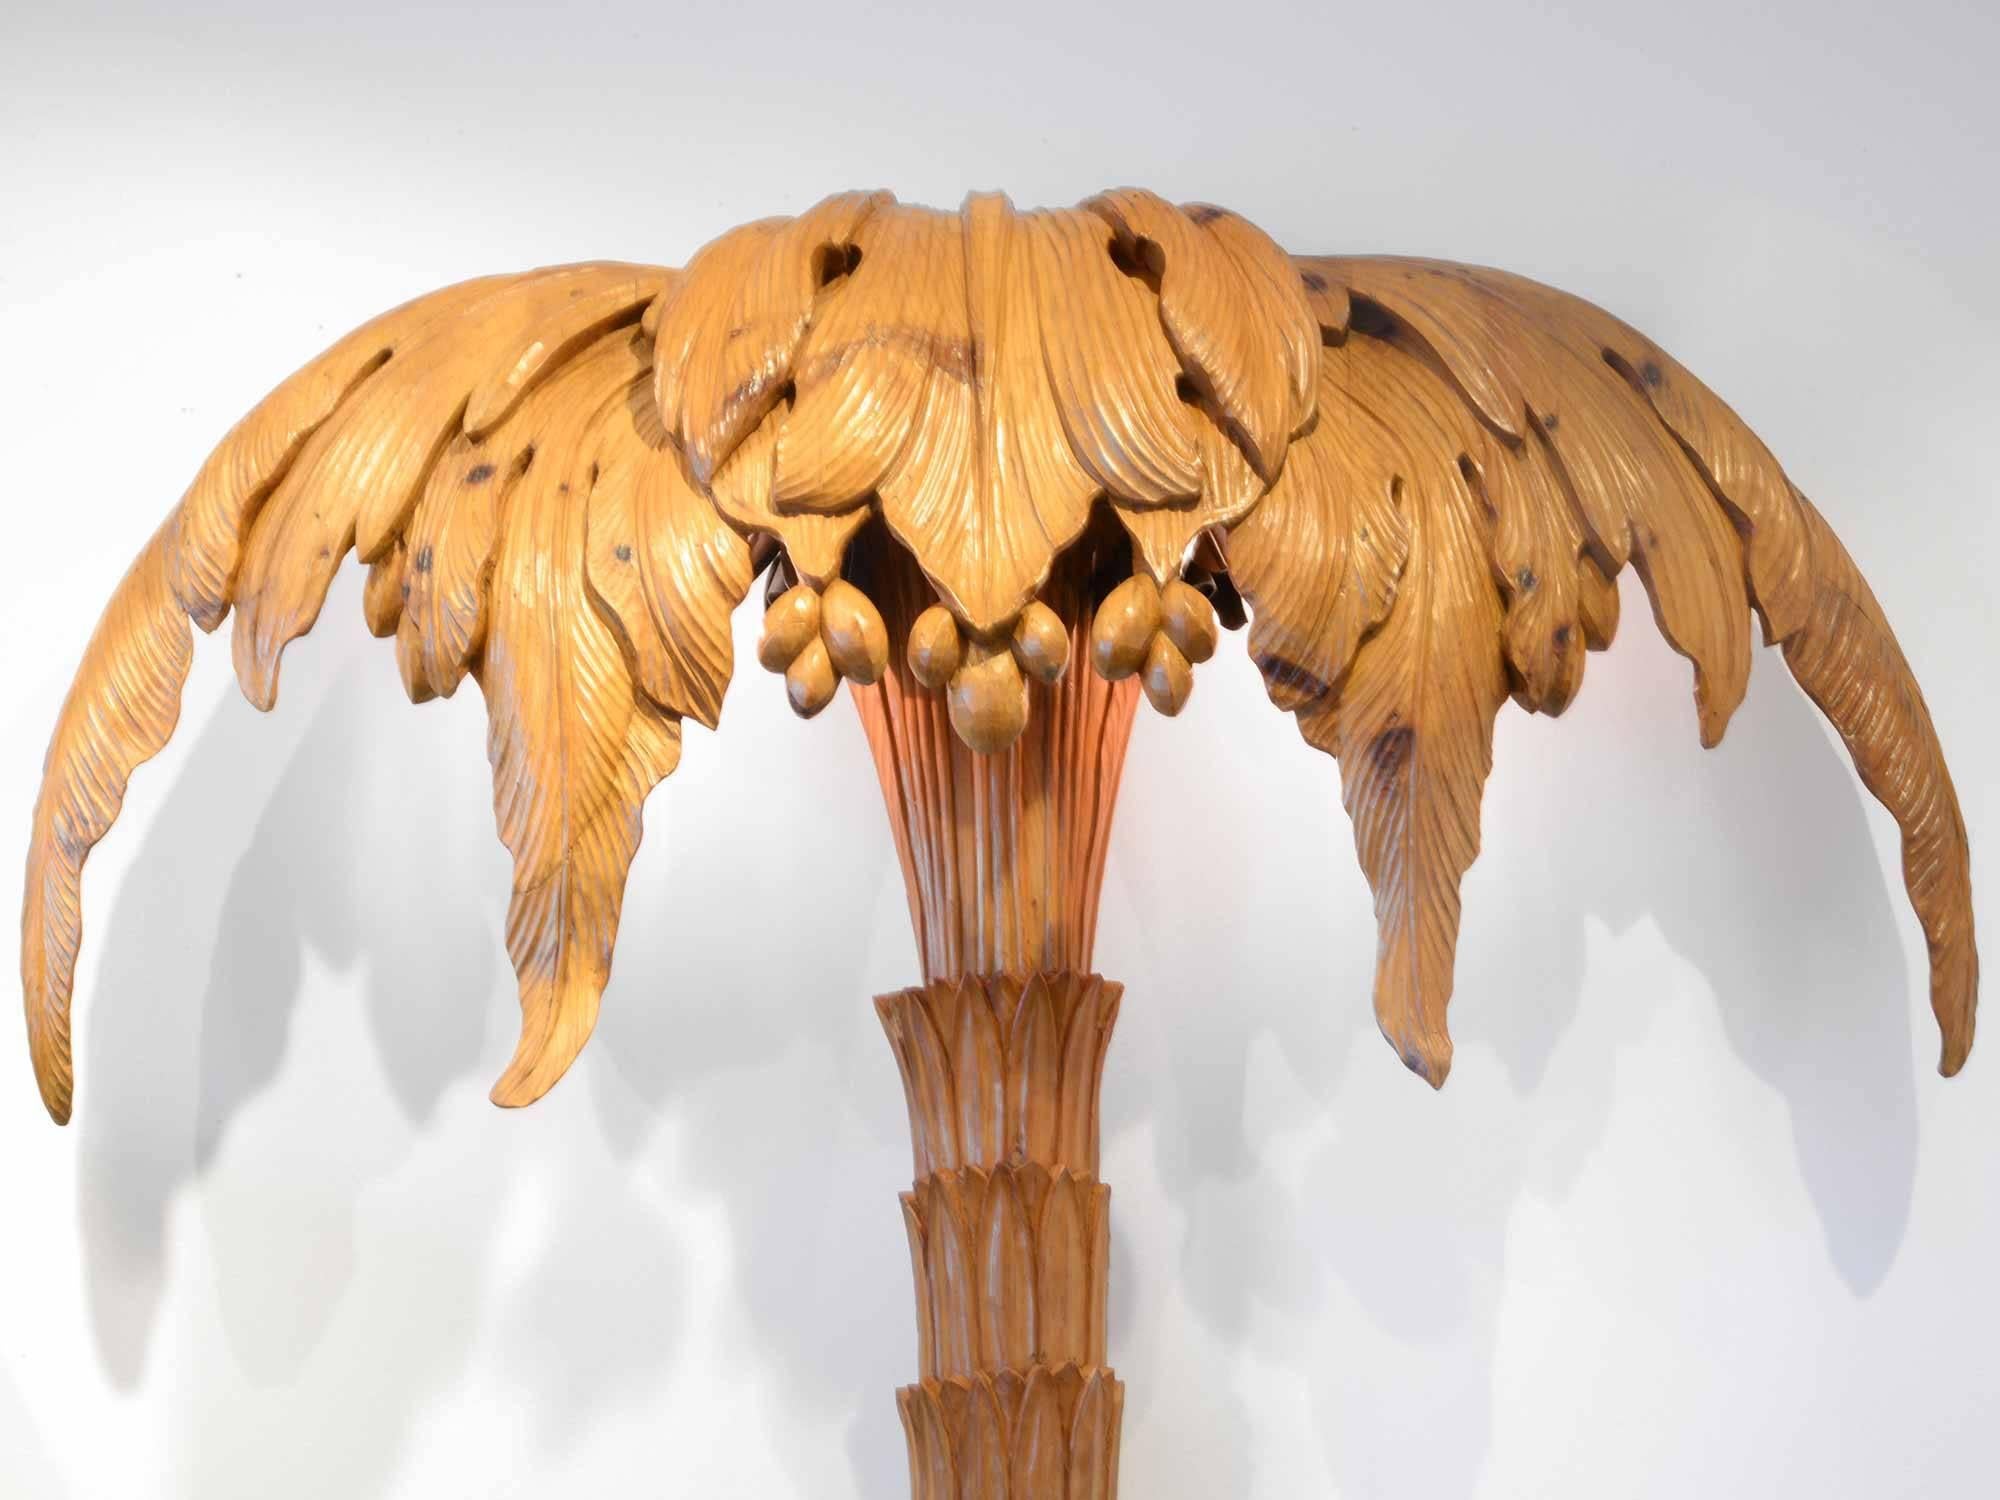 Maison Jansen.
Pair of palm trees floor lamps.

Sculpted wood.

Measures: H:215 cm;  W: 140 cm; D: 25 cm,

France, circa 1940.